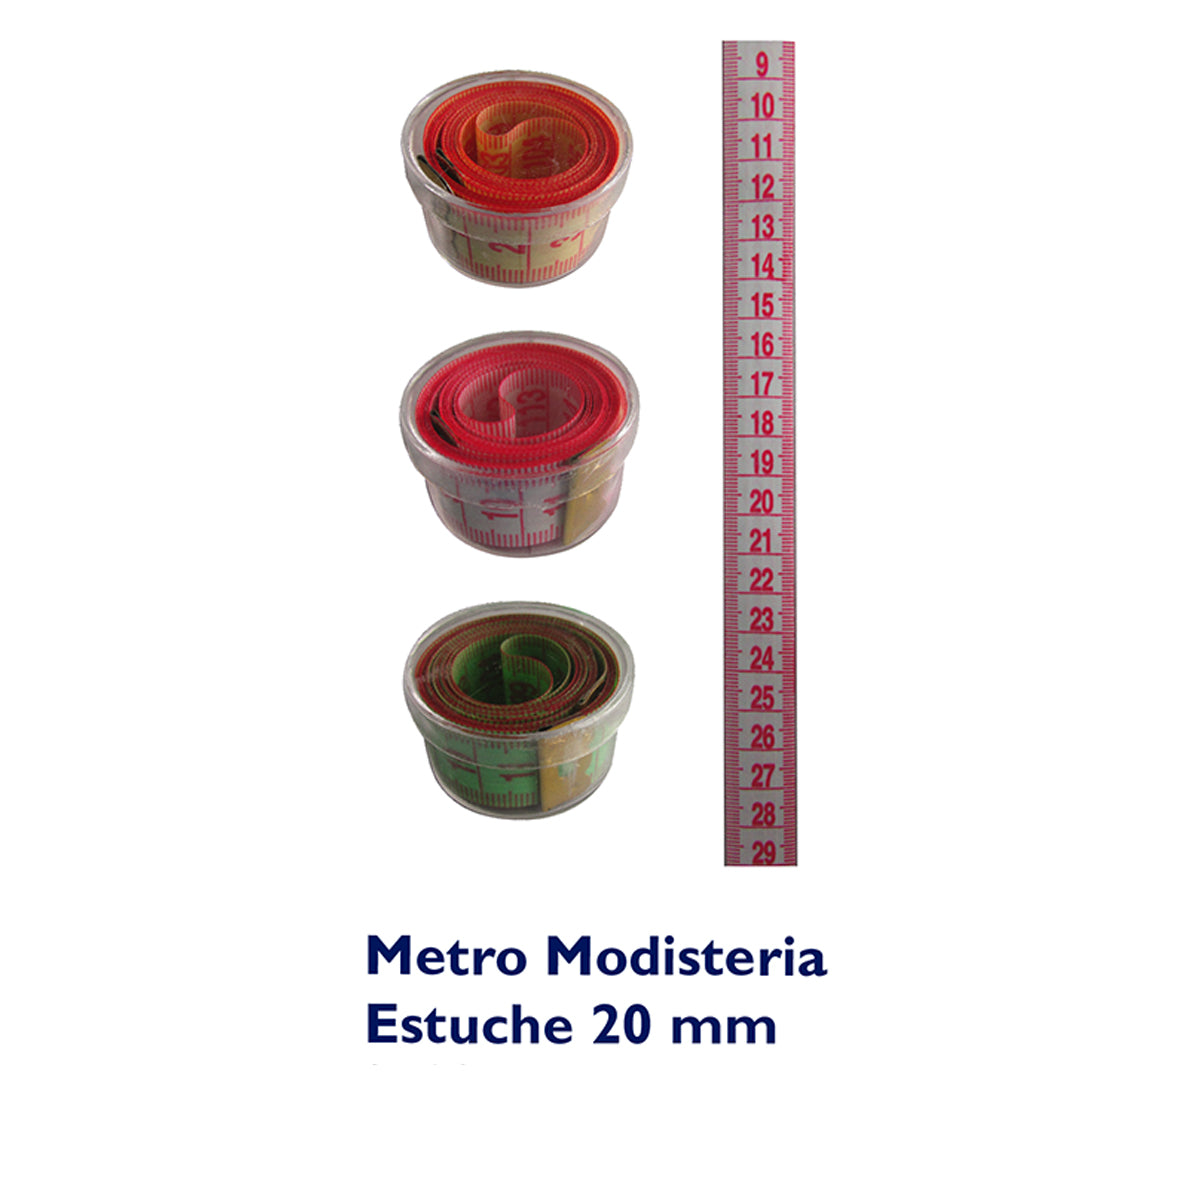 Metro Modisteria Estuche